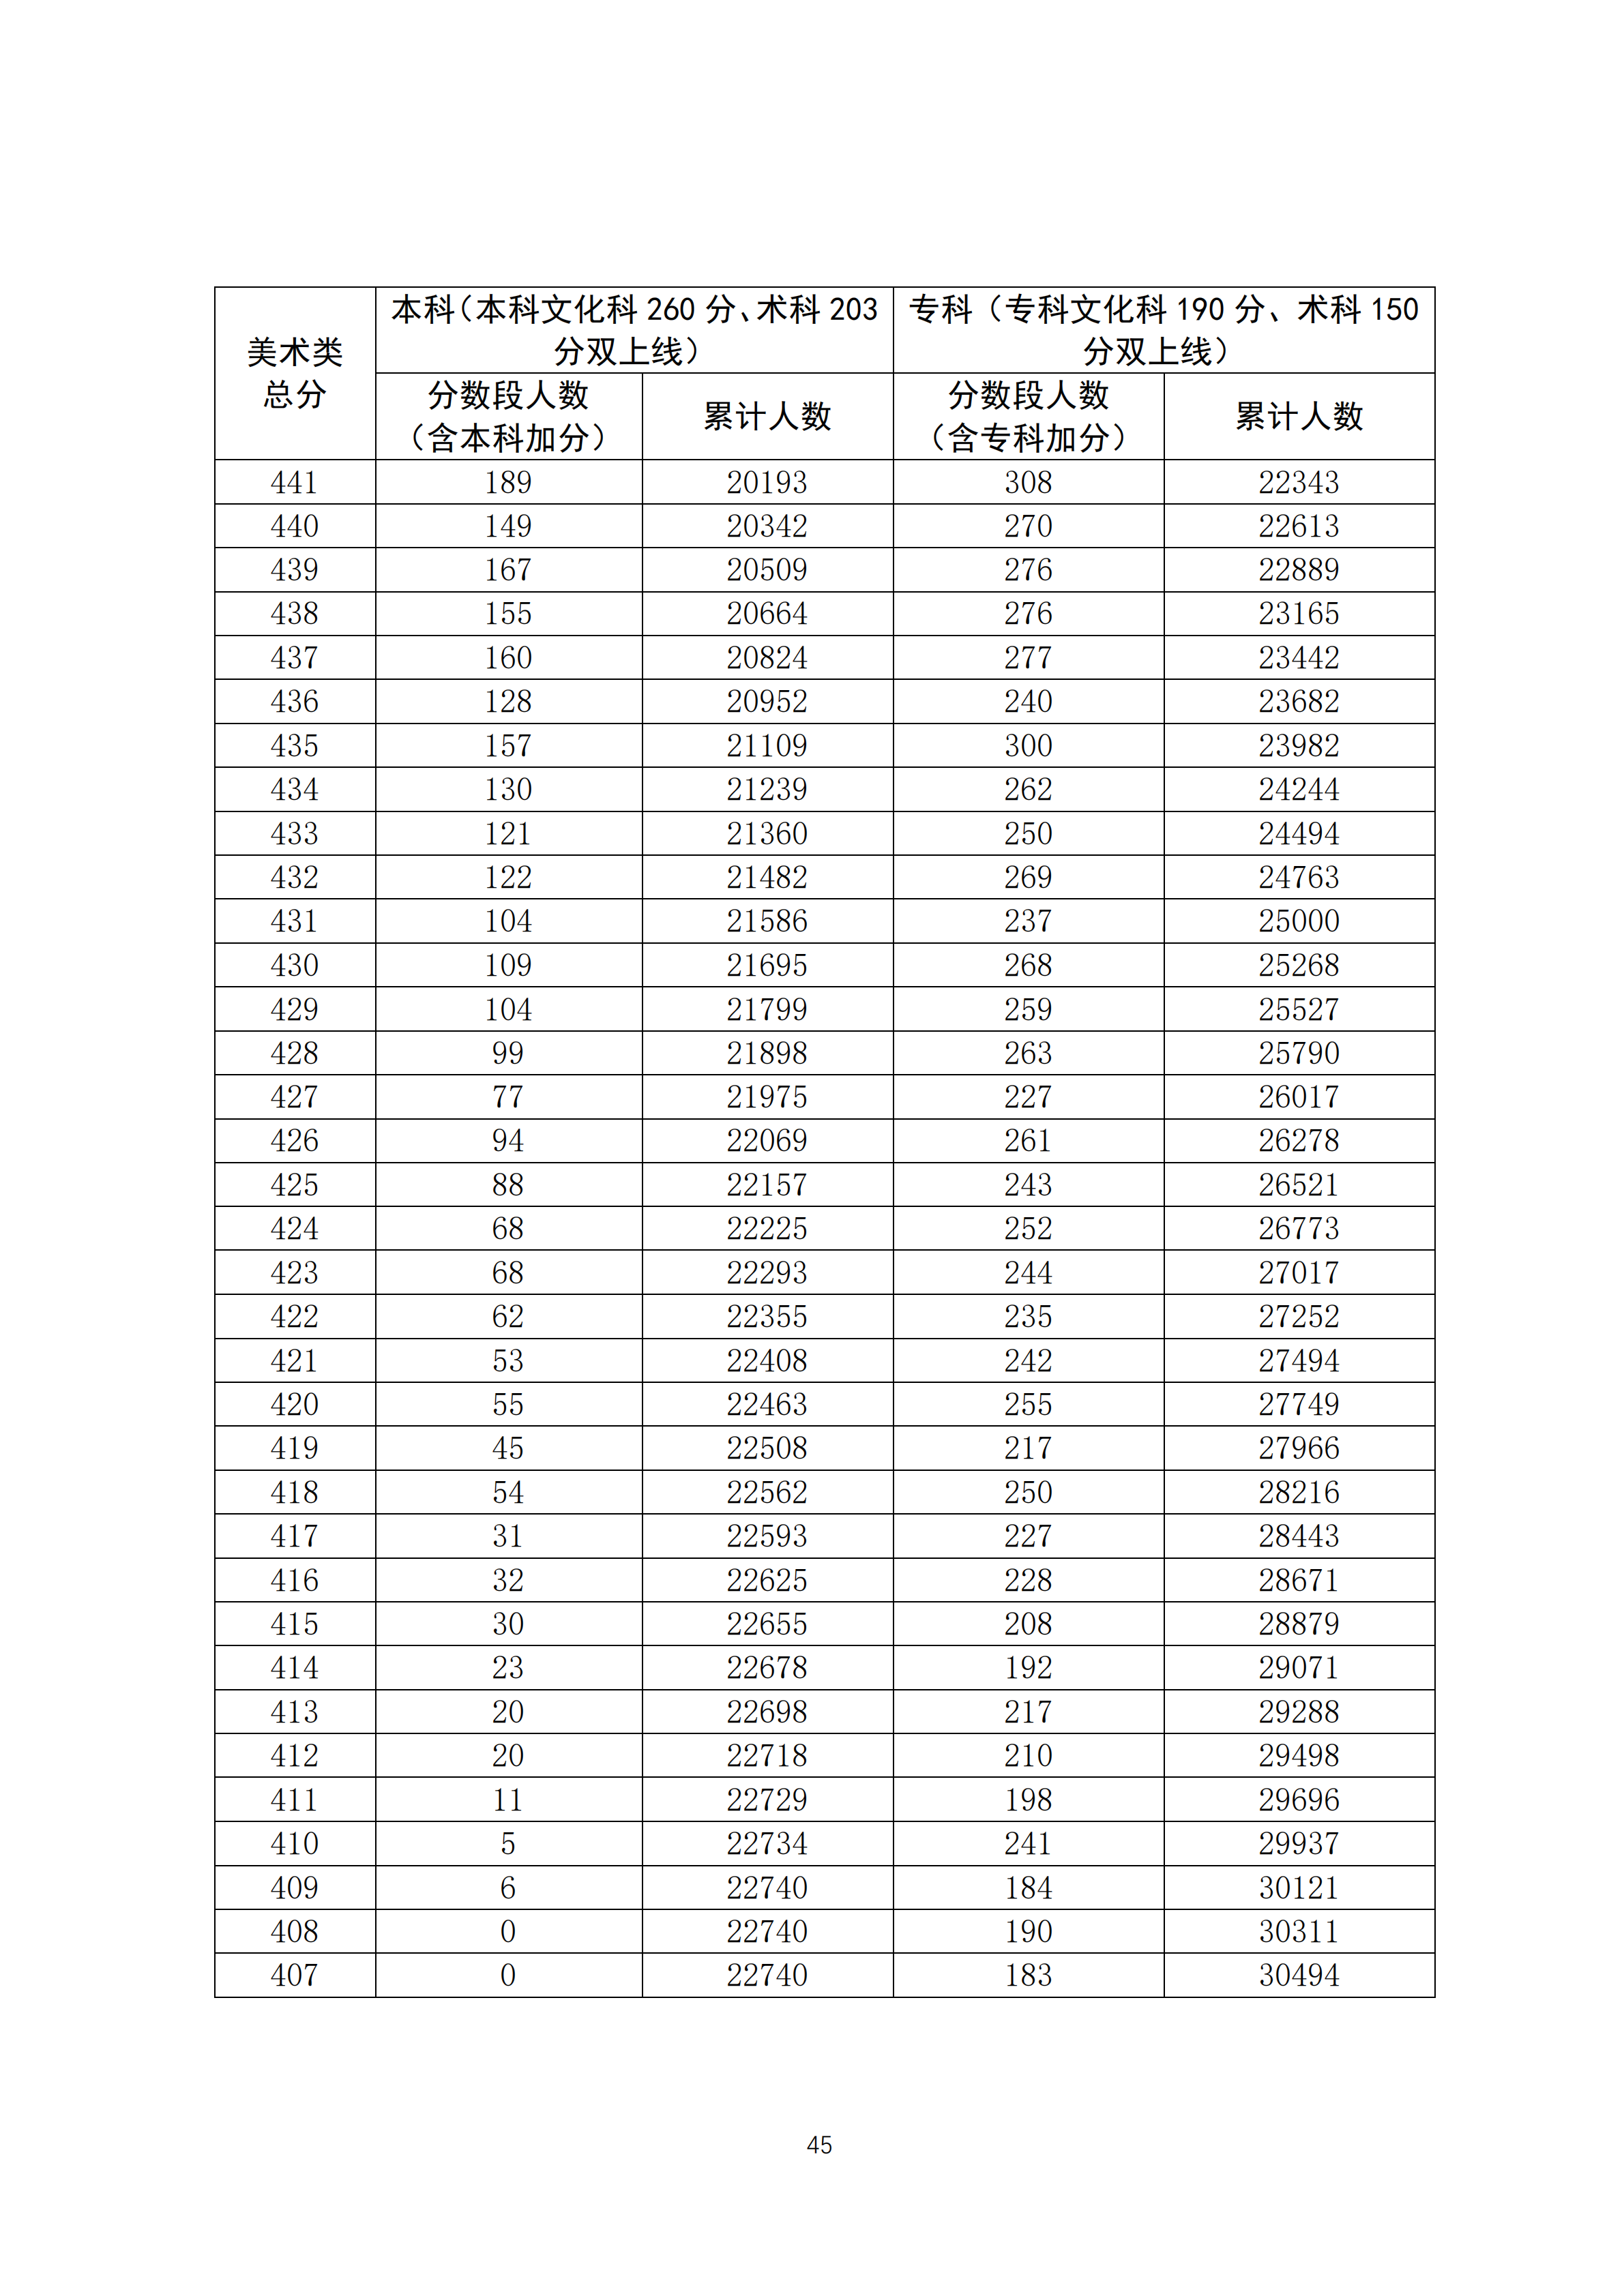 2020广东高考一分一段表 美术类成绩排名及分数段人数